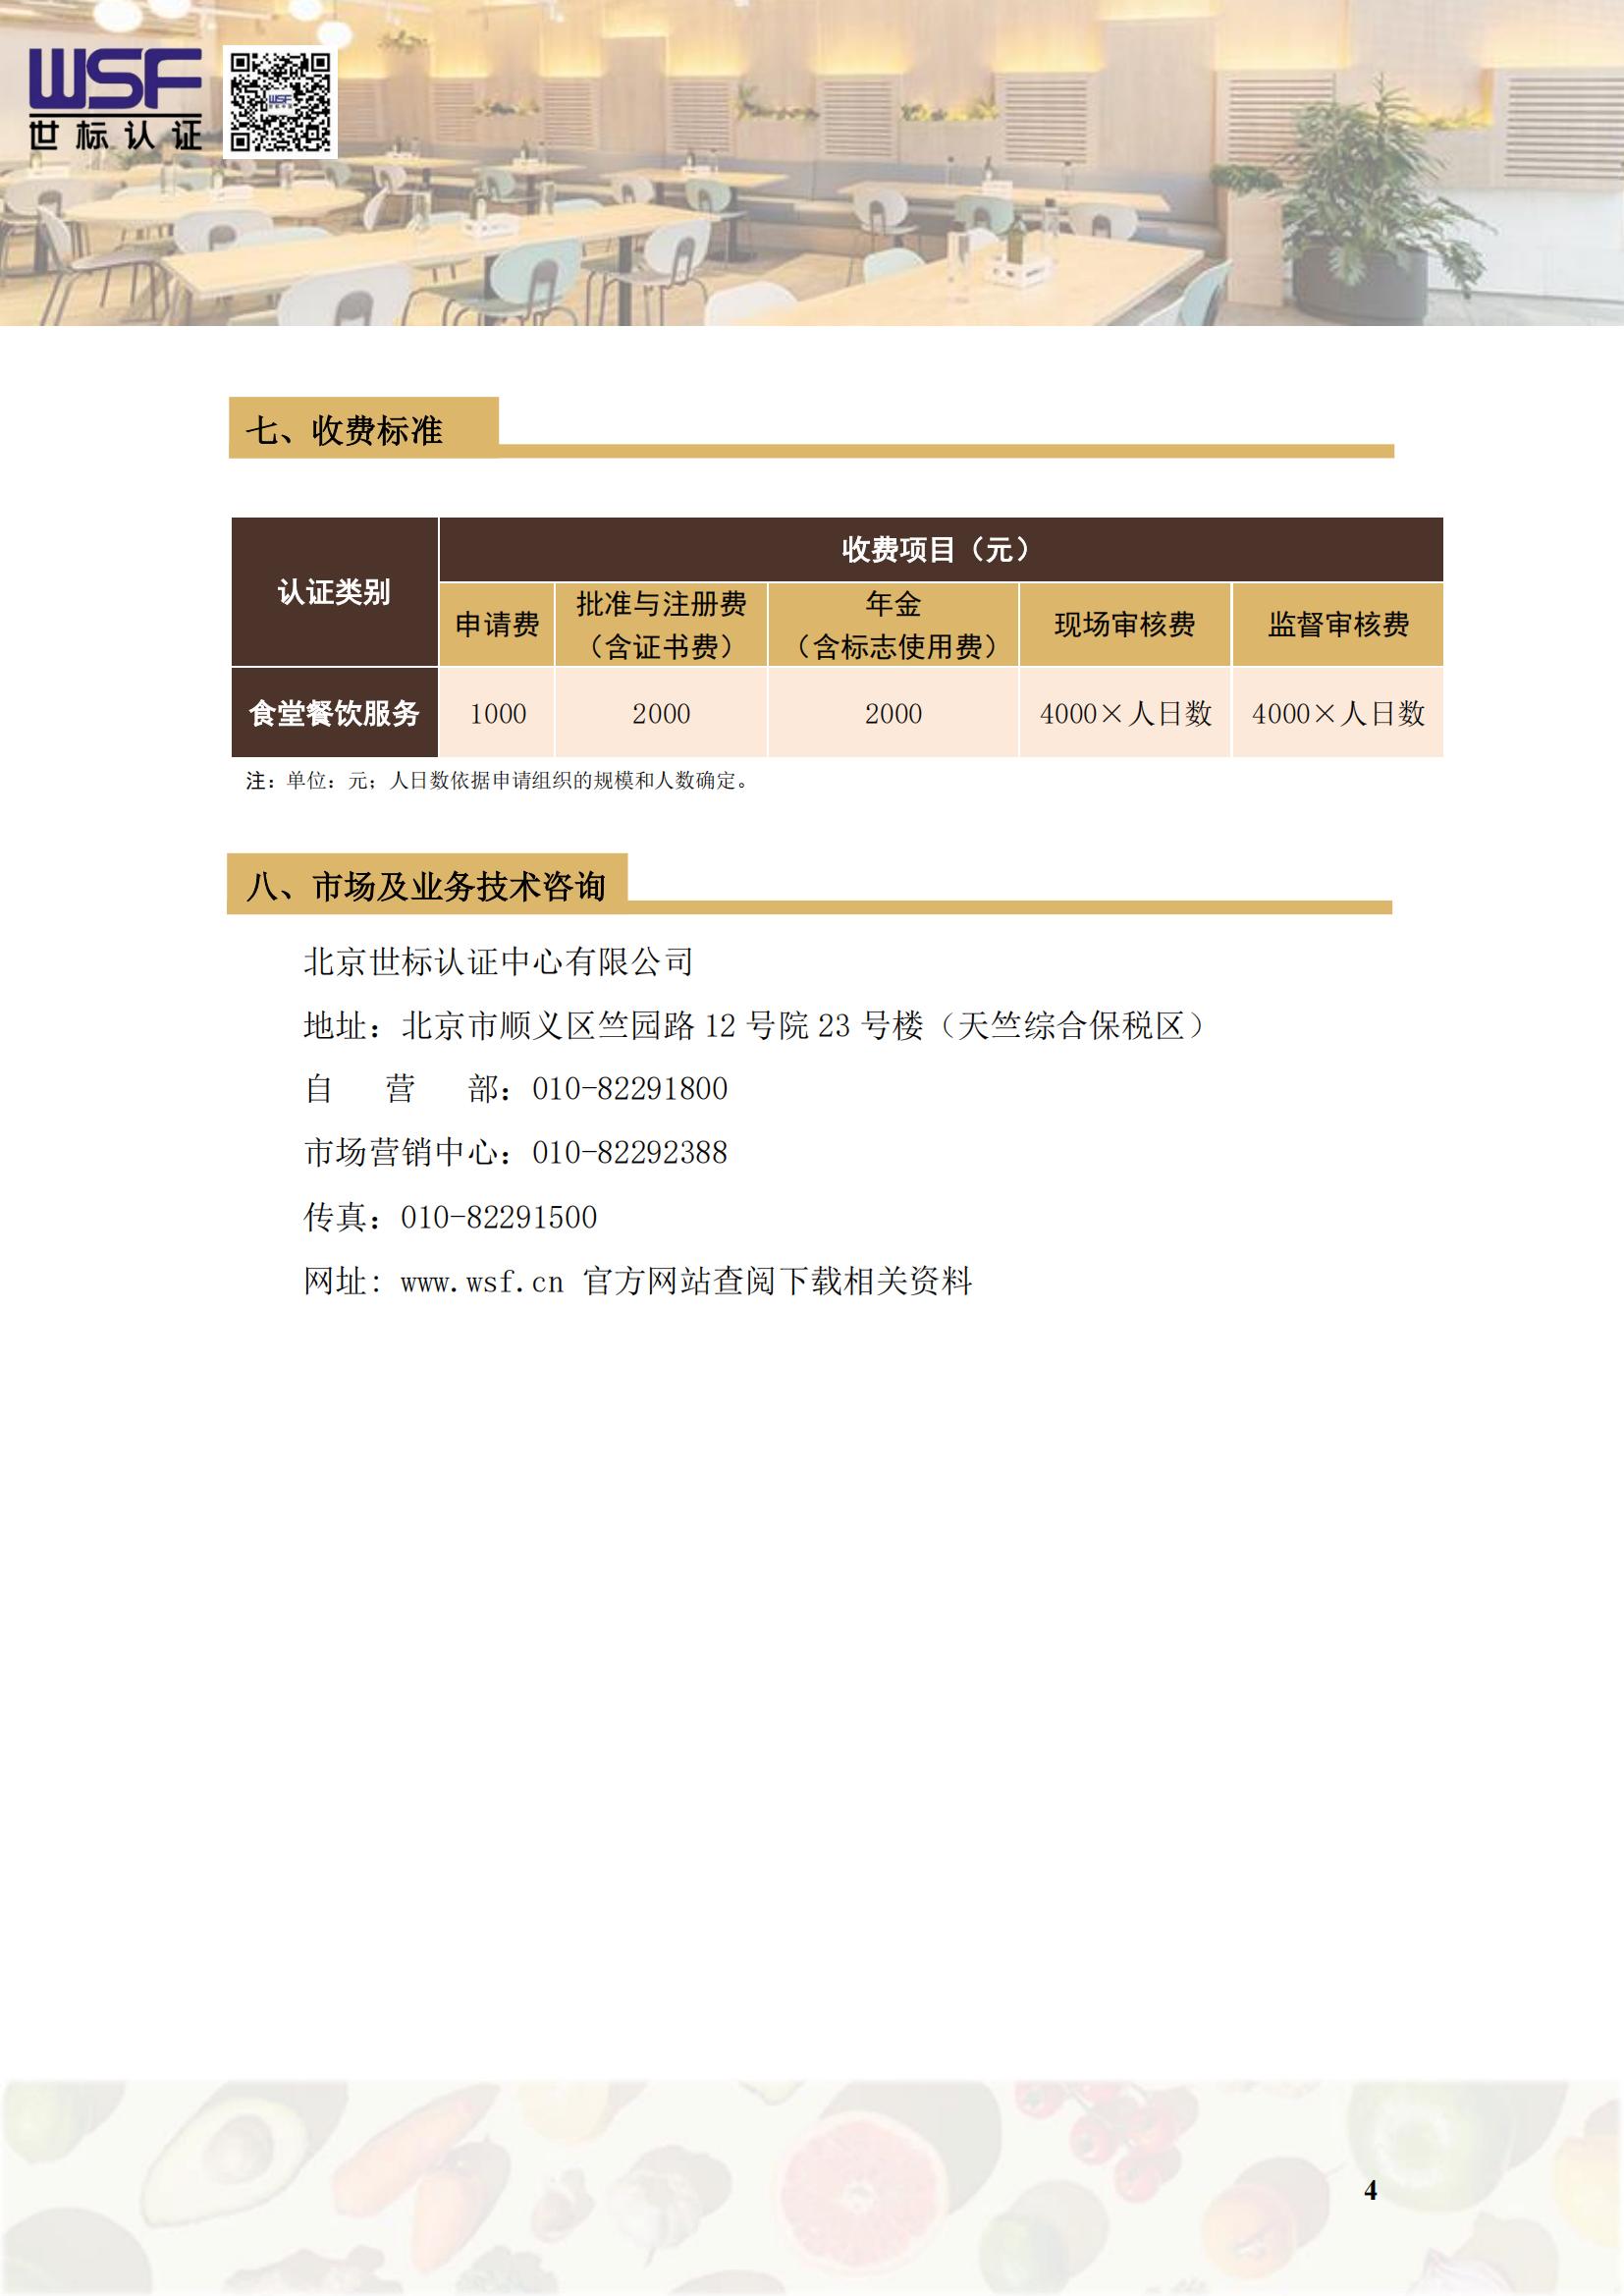 食堂餐饮服务认证项目介绍_03.jpg